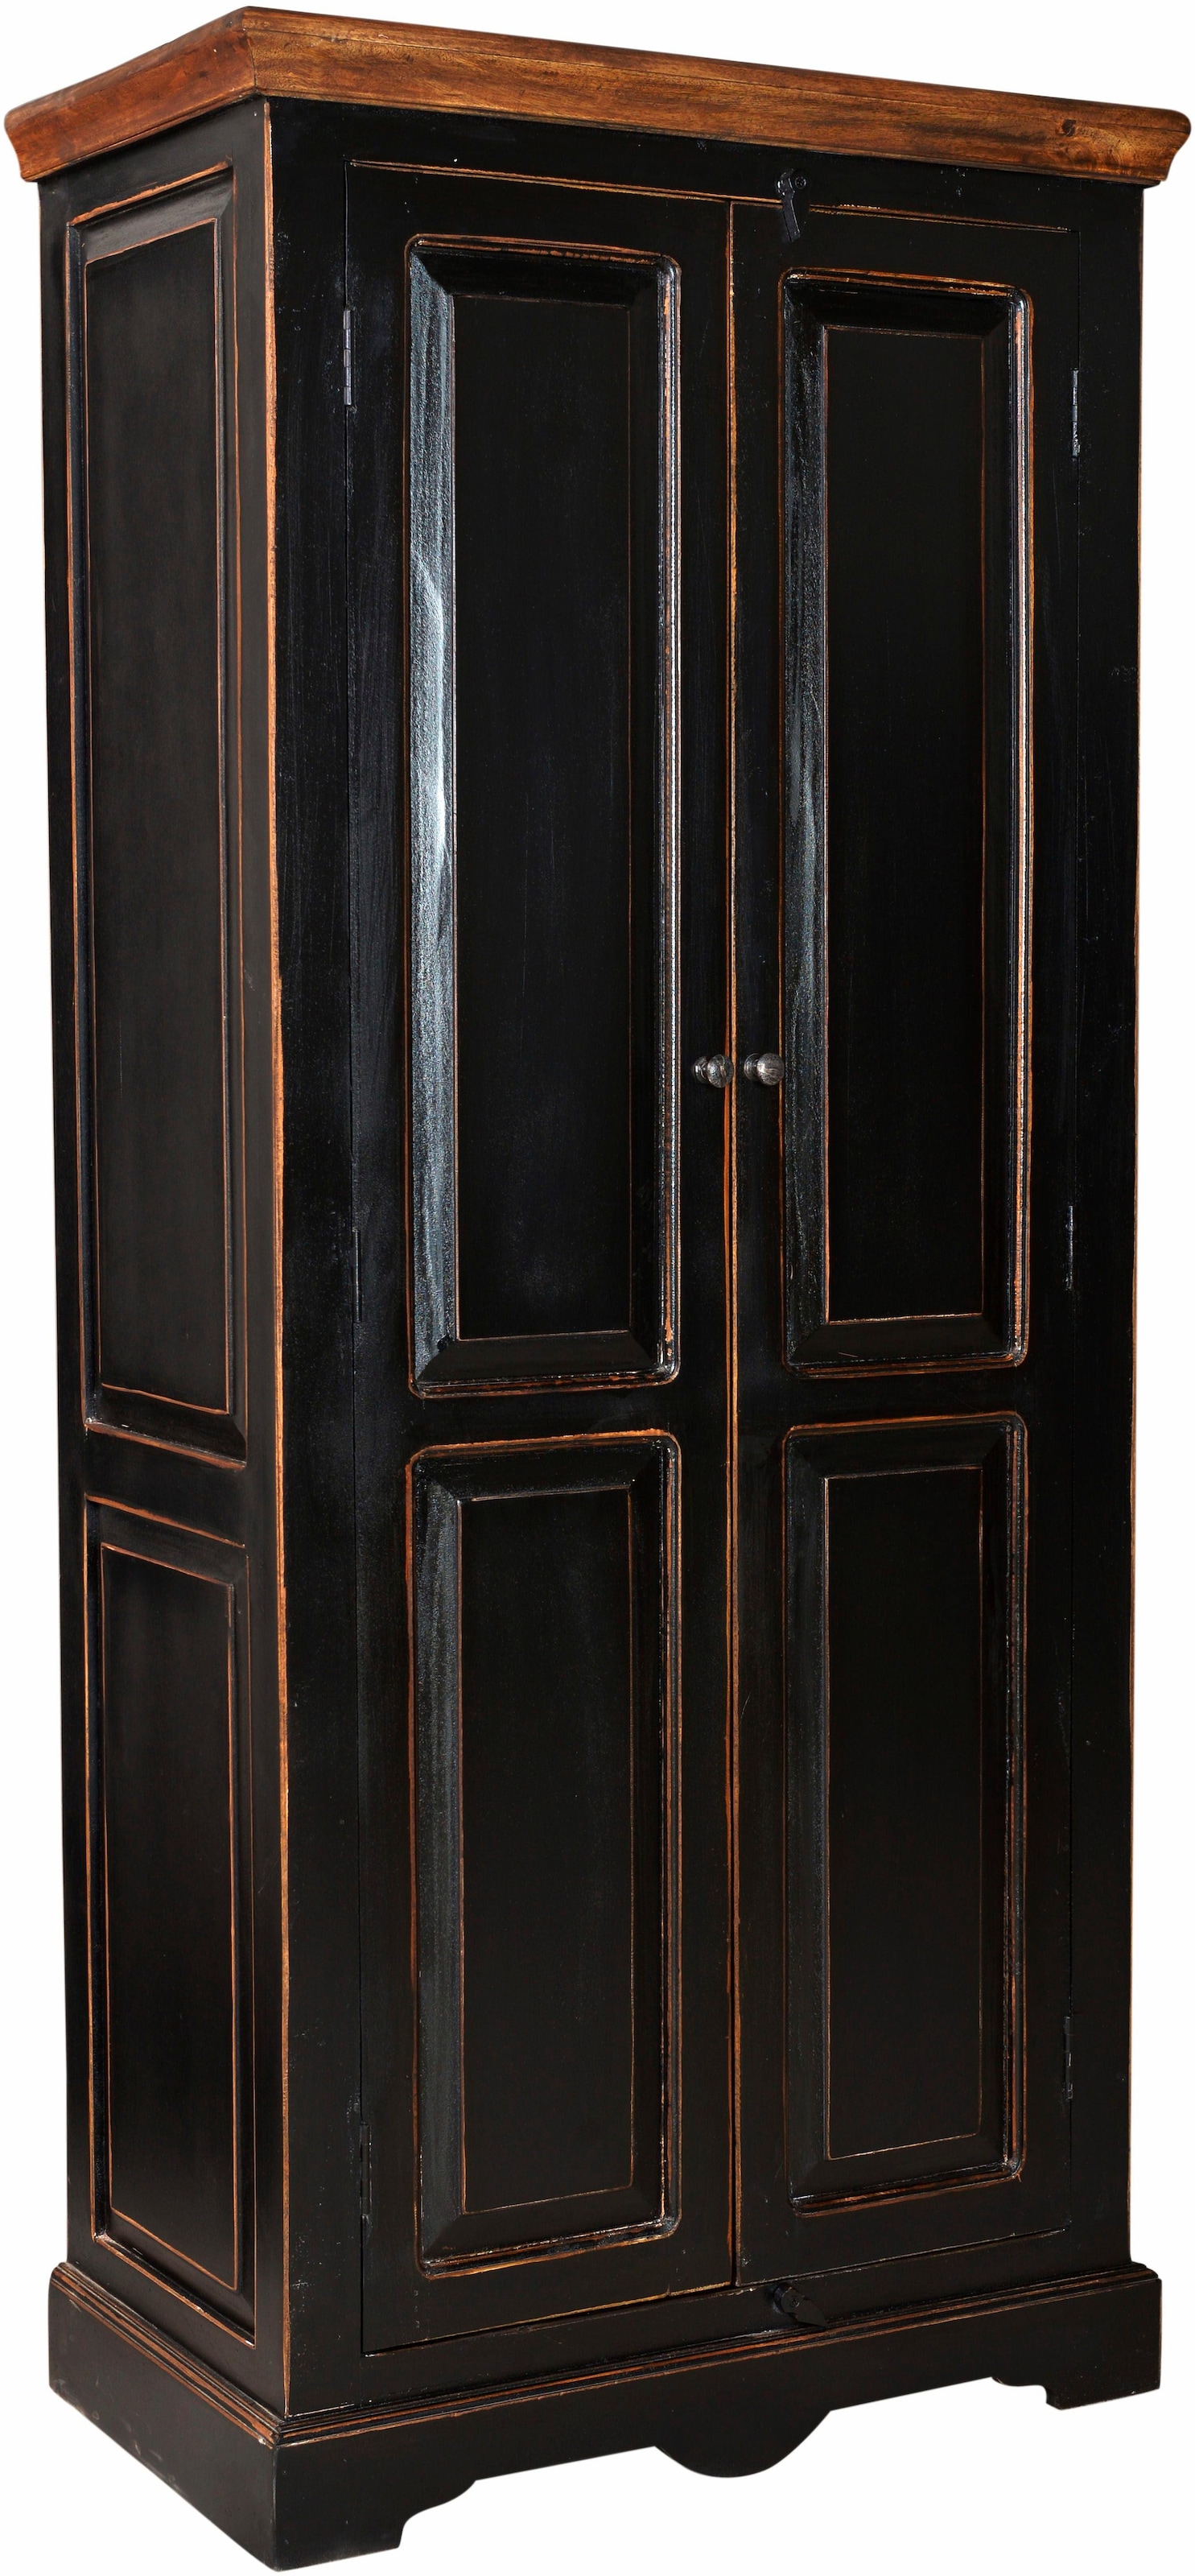 SIT Drehtürenschrank »Corsica«, mit zwei Türen, Höhe 180 cm, Shabby Chic, Vintage